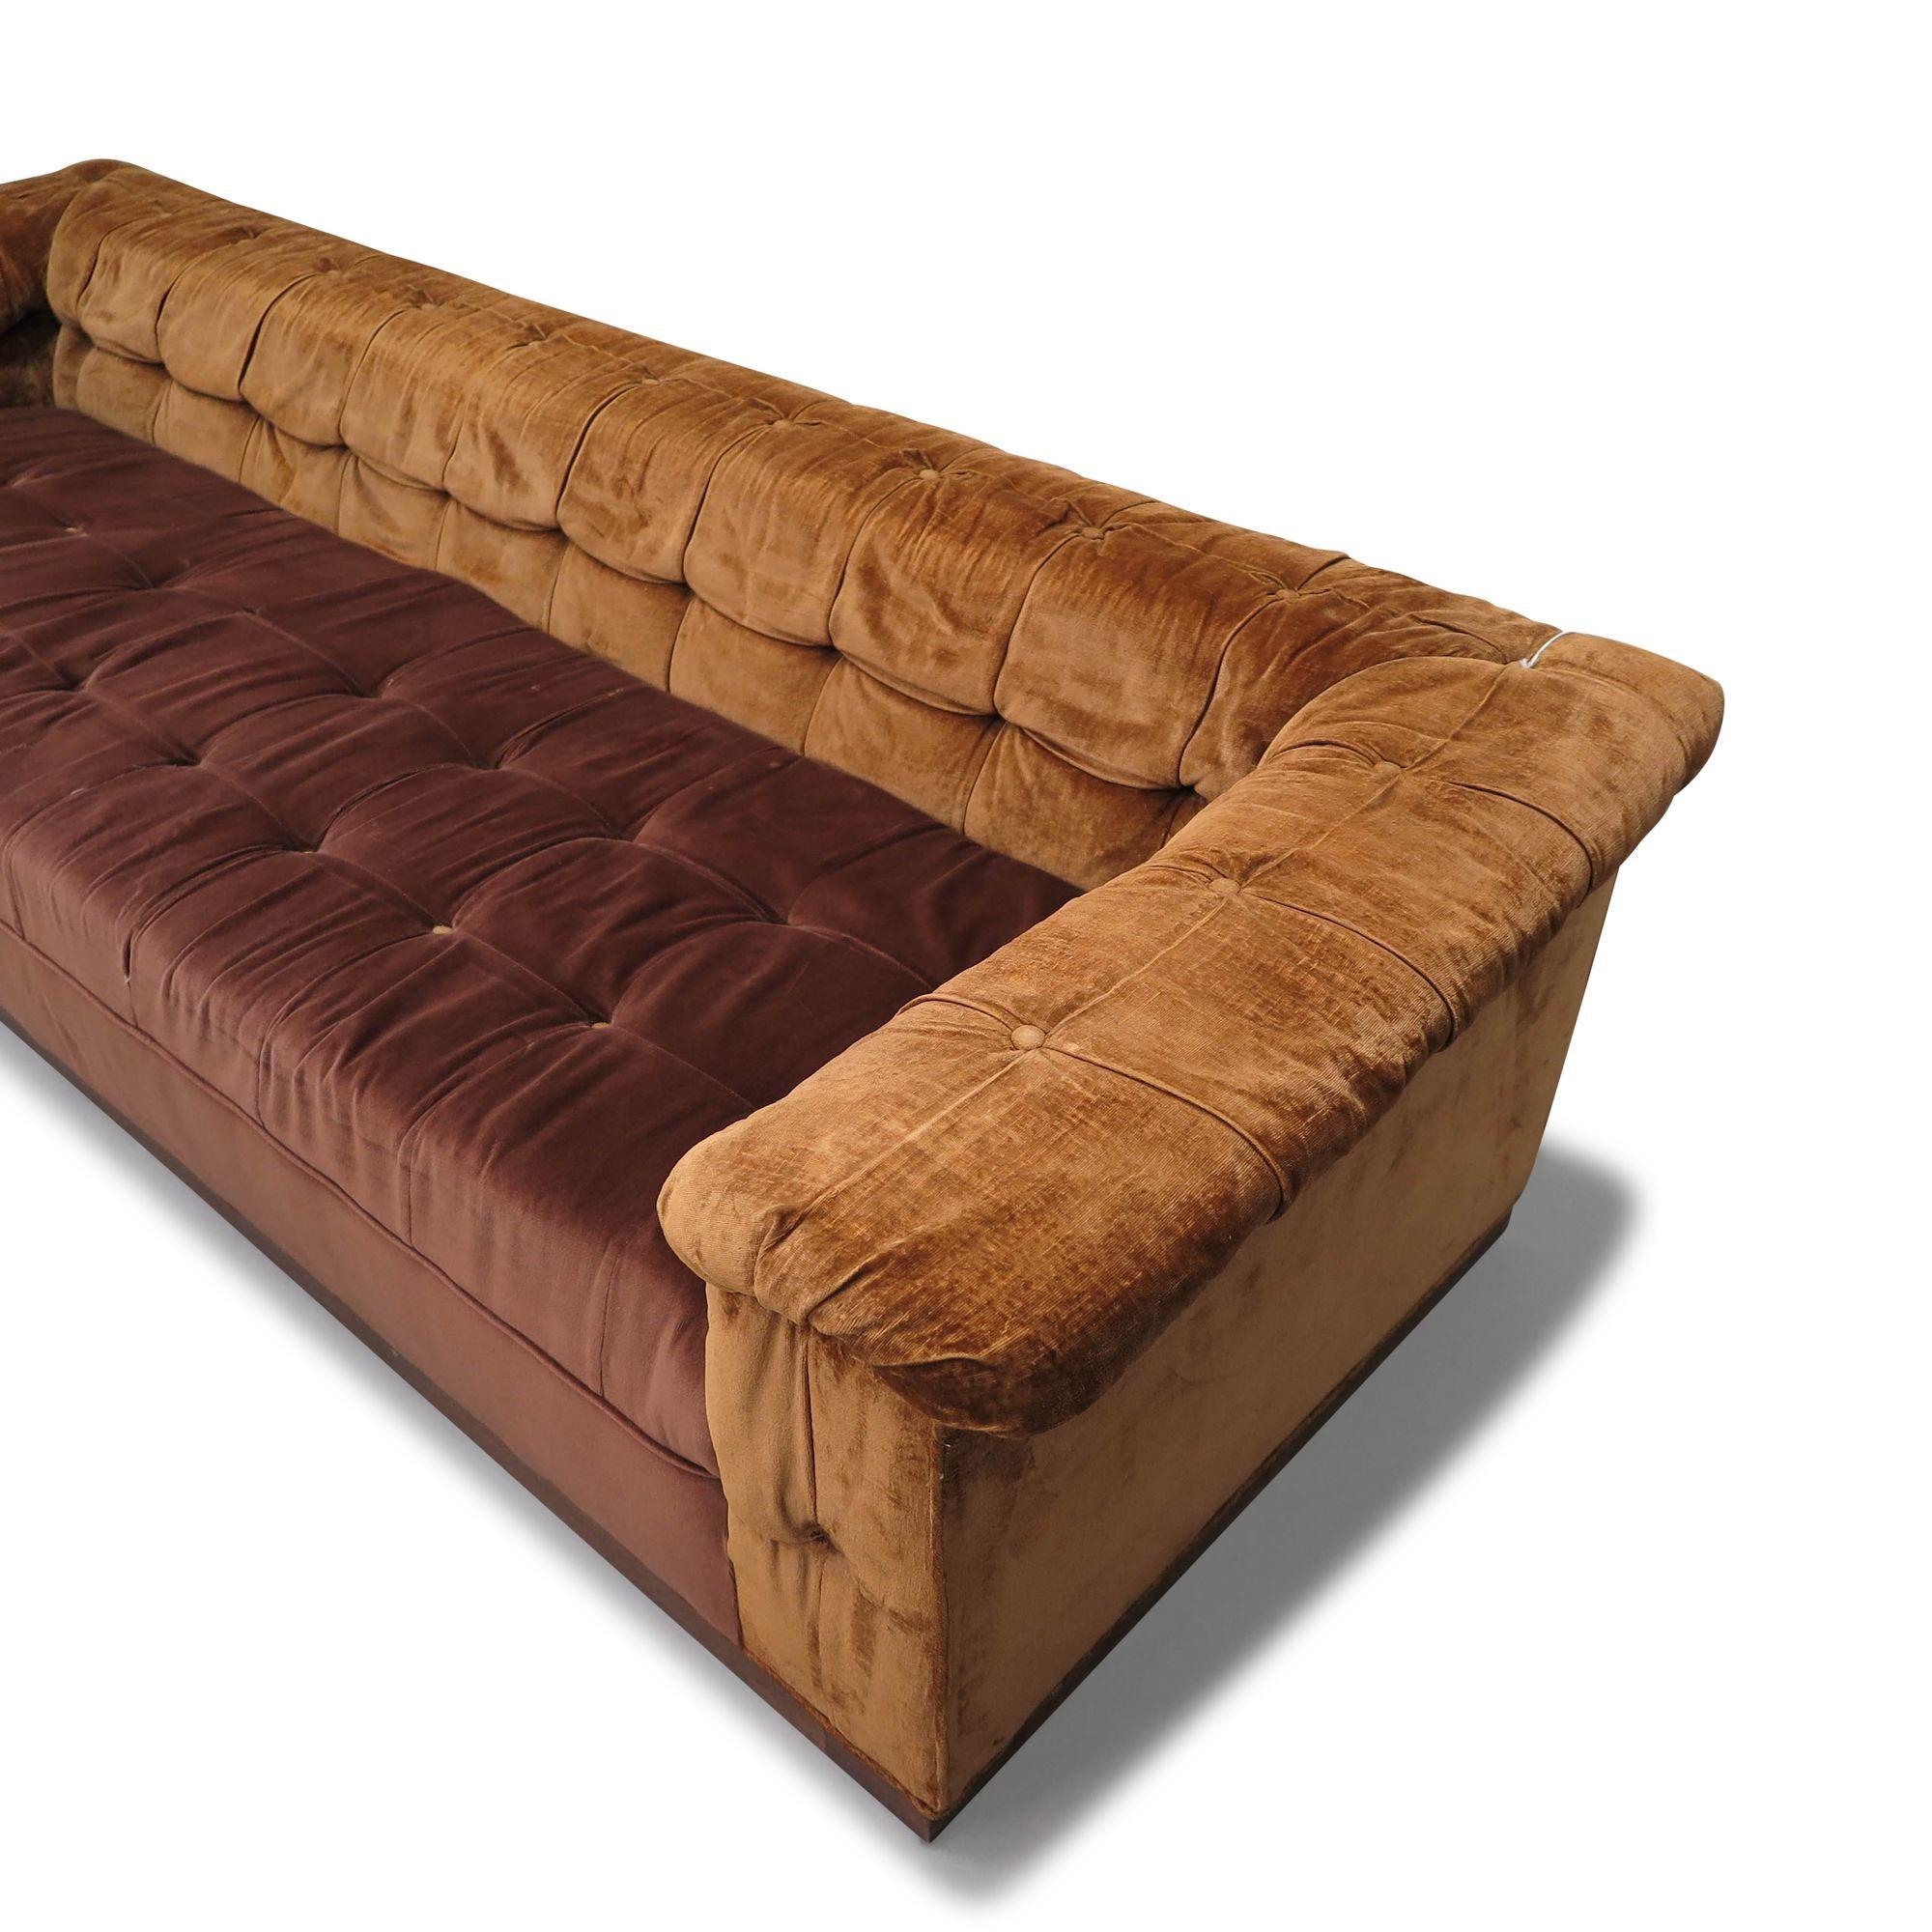 Sofa aus der Mitte des Jahrhunderts, entworfen von Edward Wormley für Dunbar, Party-Sofa, Modell 5407, Vereinigte Staaten, 1950. Dieses Sofa mit Massivholzrahmen und Federkernsitzen ist mit dem originalen braunen Samtstoff bezogen und wird von einem